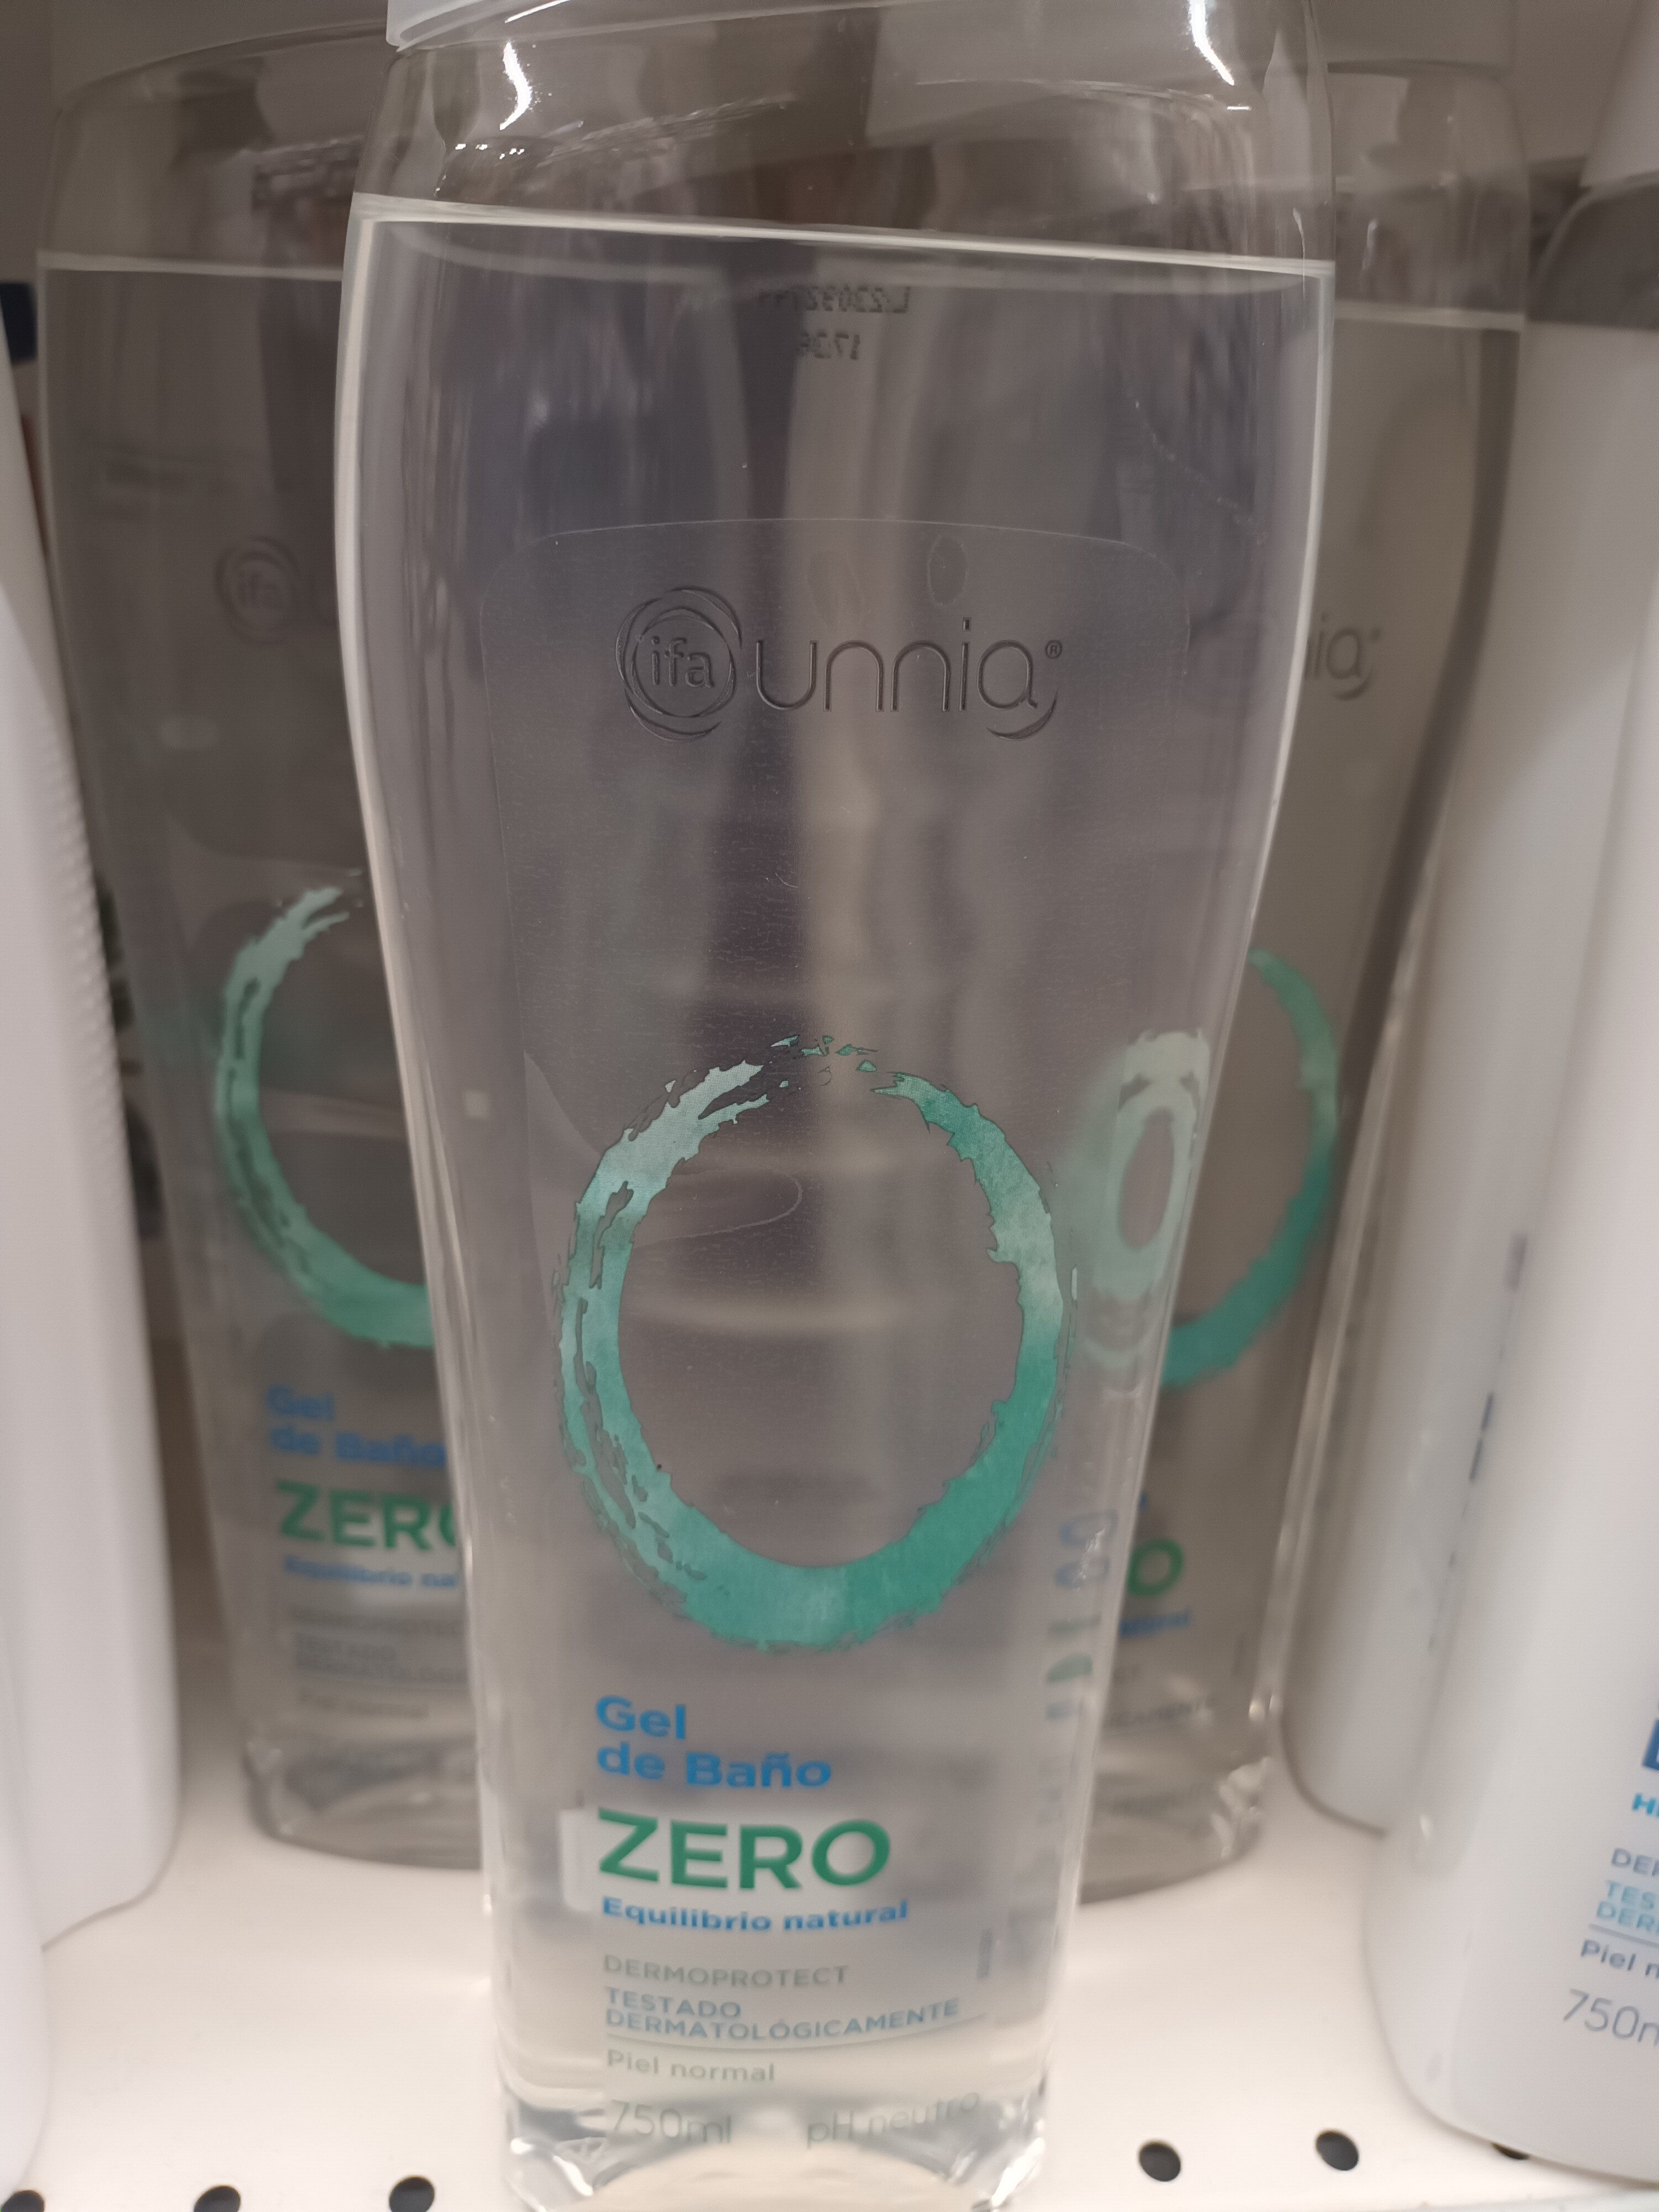 Gel de baño Zero - Product - es